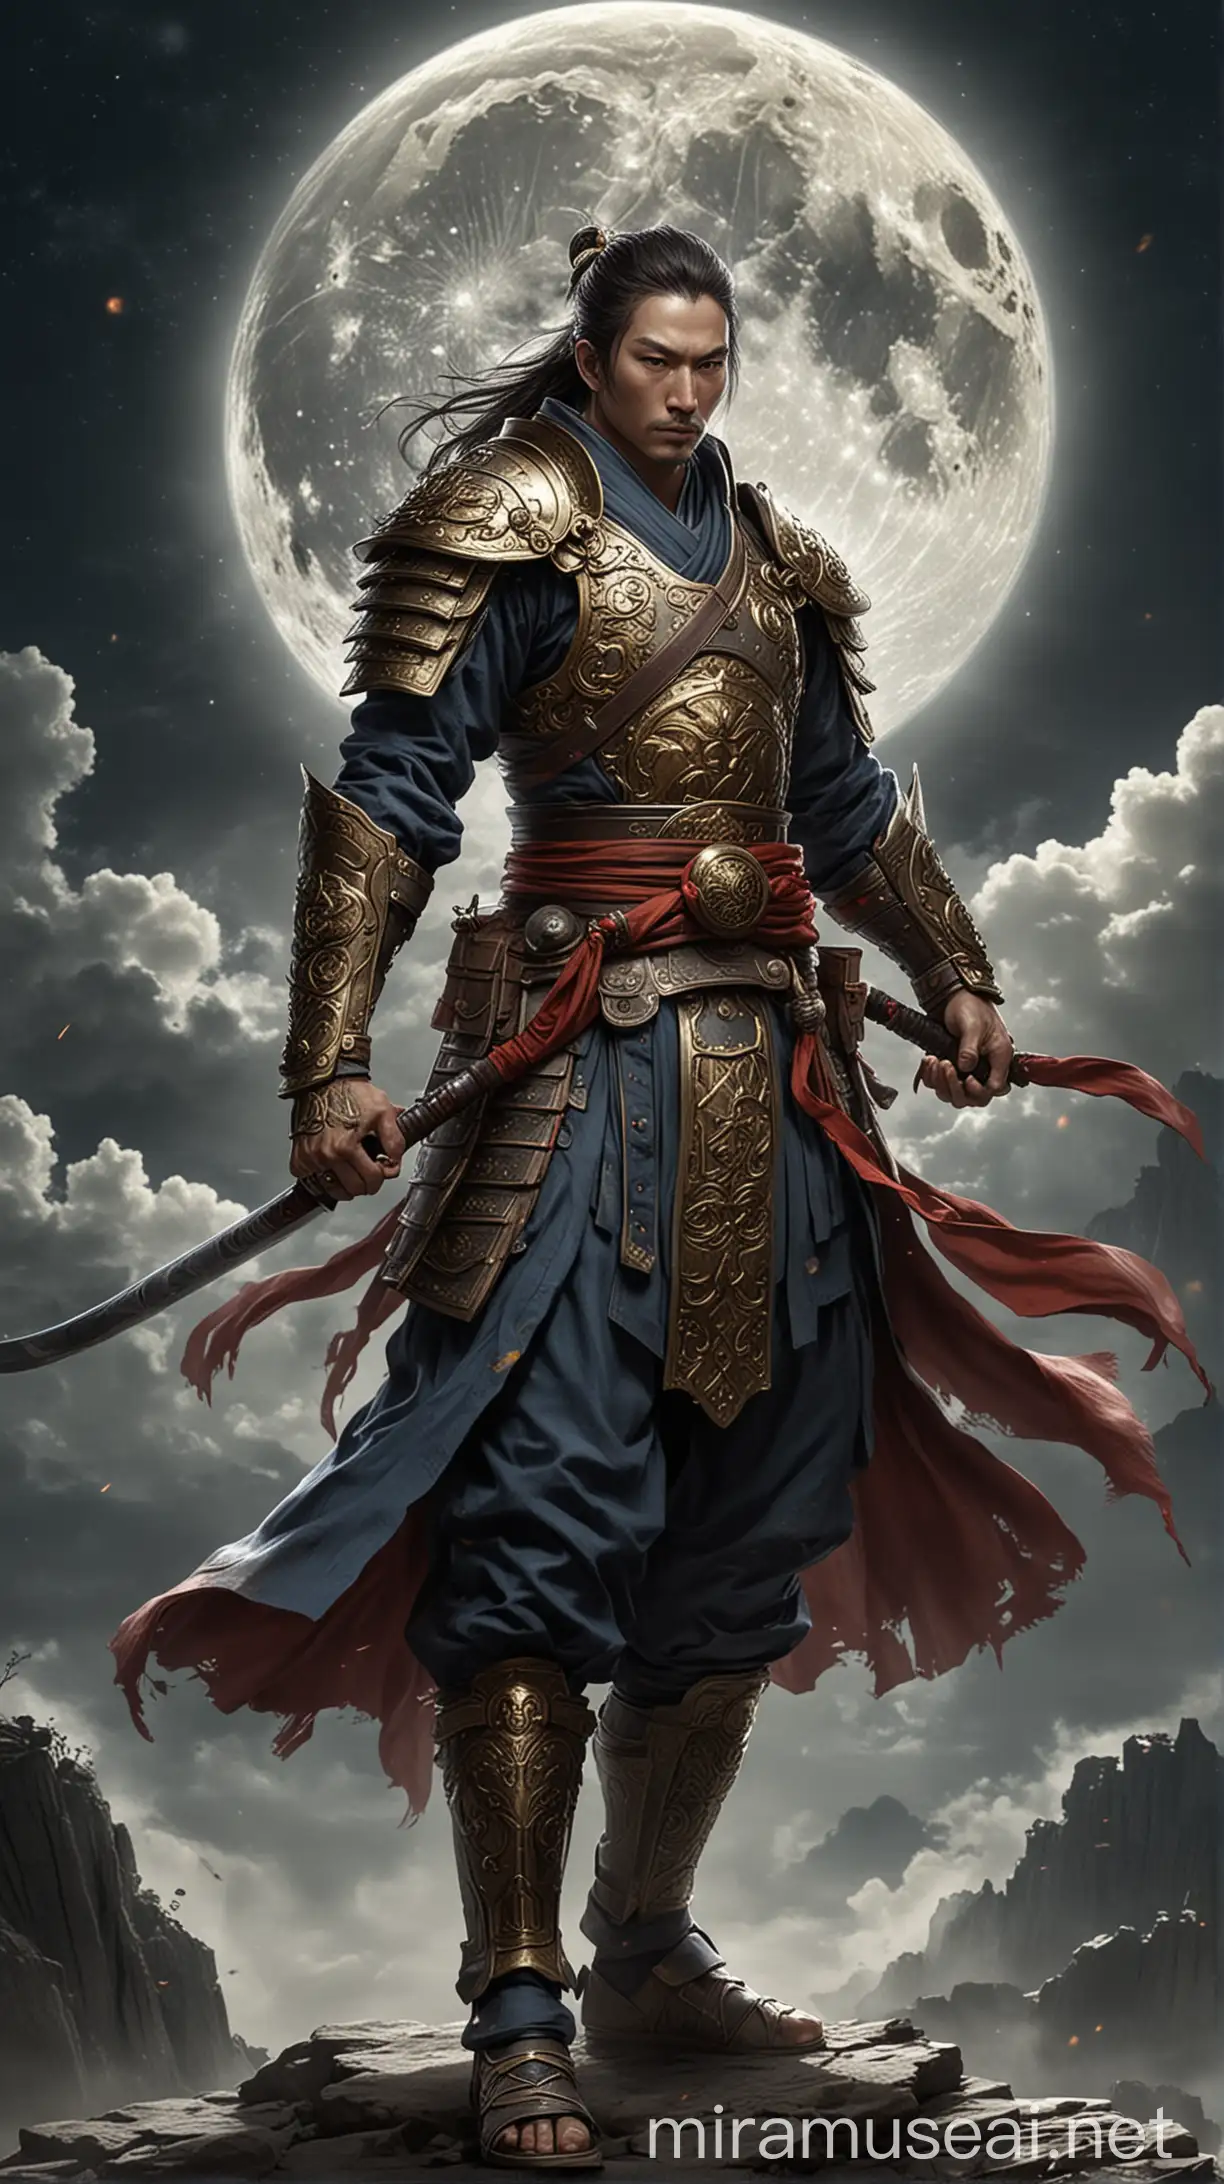 благородный стражник Луны, владеющий мастерством боевого искусства и способный защитить своих соратников.